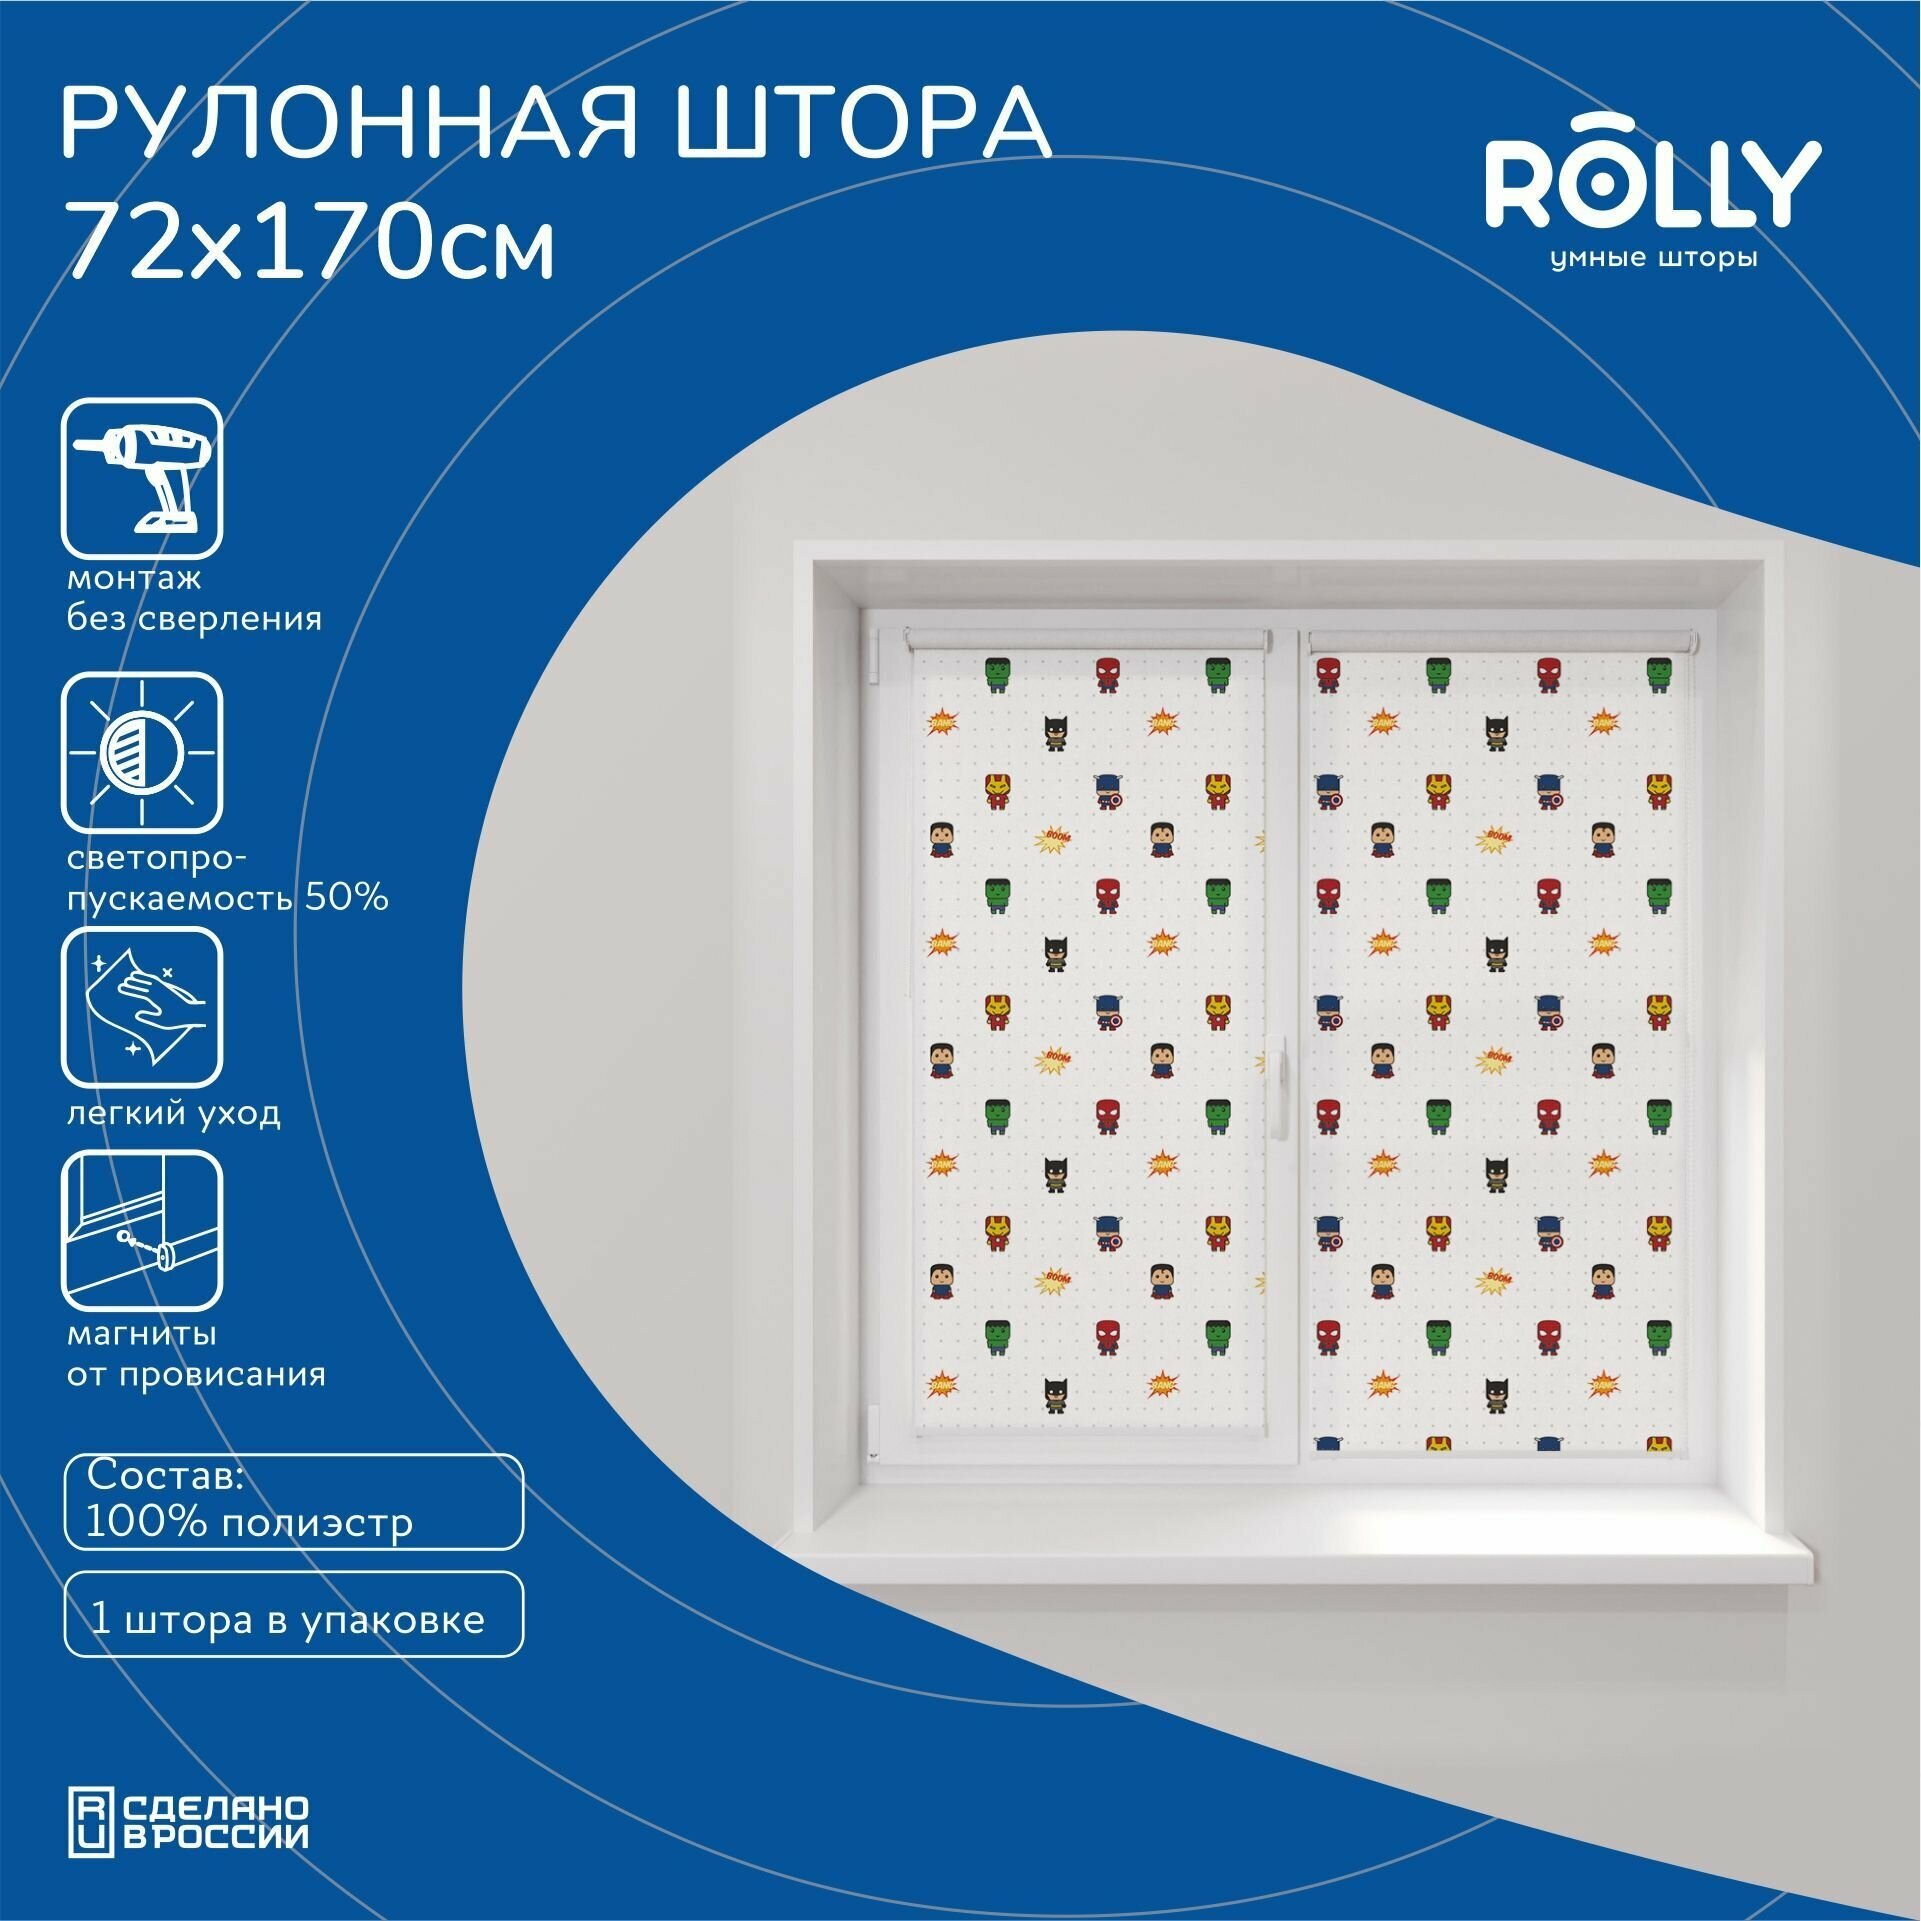 Шторы рулонные Rolly Premium принт "Герои" 72 х 170 см, полупрозрачные, магнитная и боковая фиксация. - фотография № 1